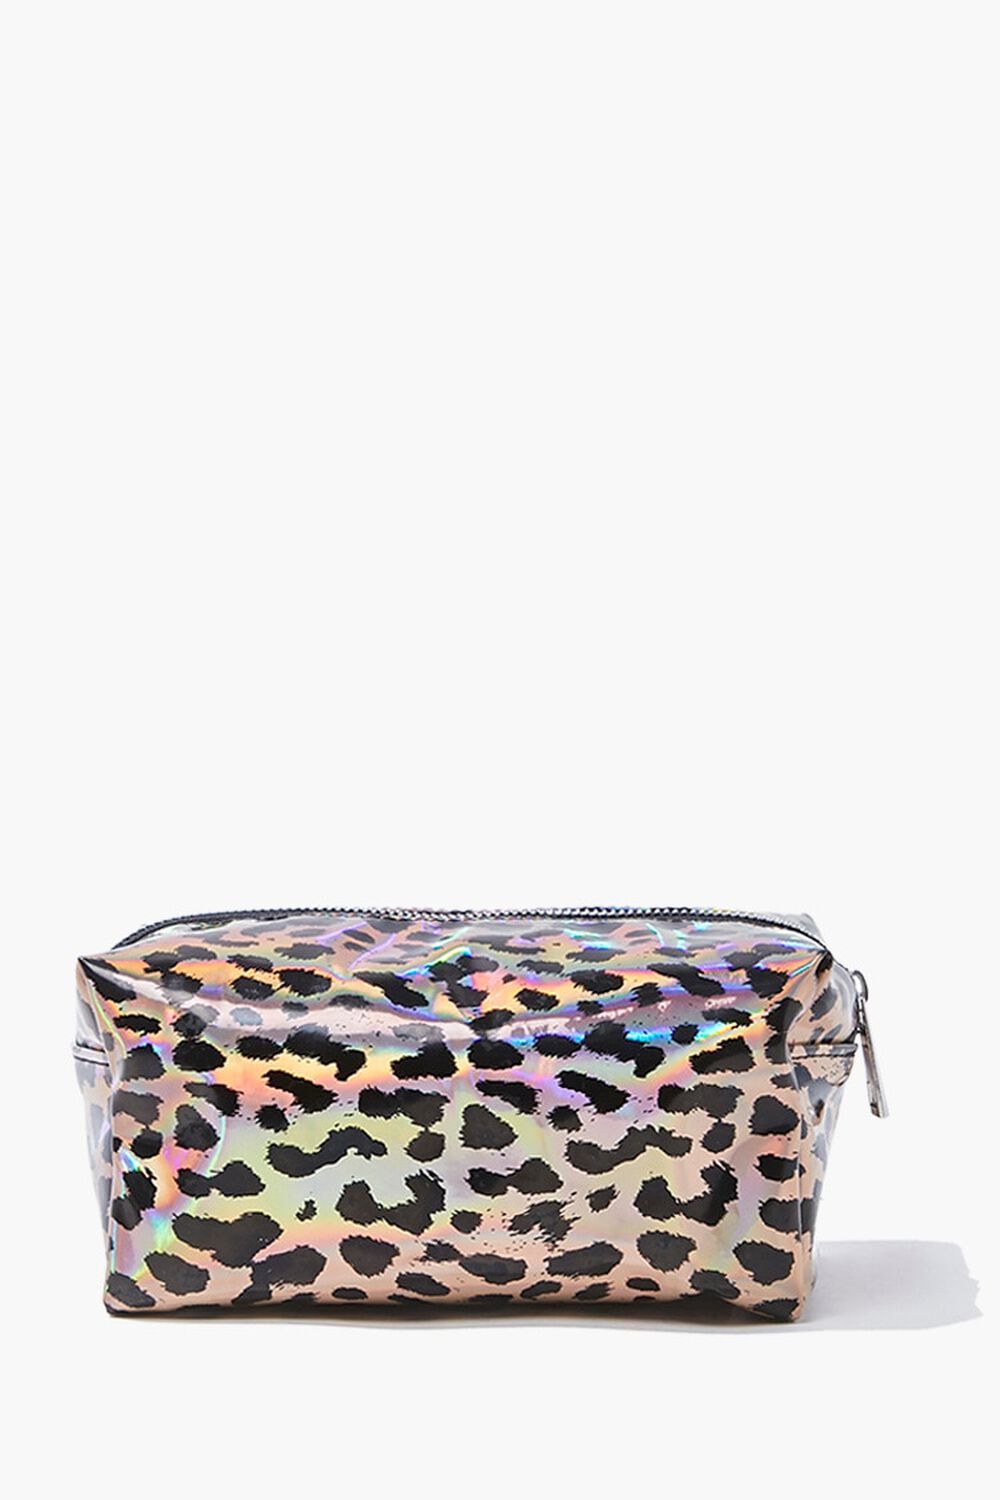 Iridescent Leopard Print Makeup Bag